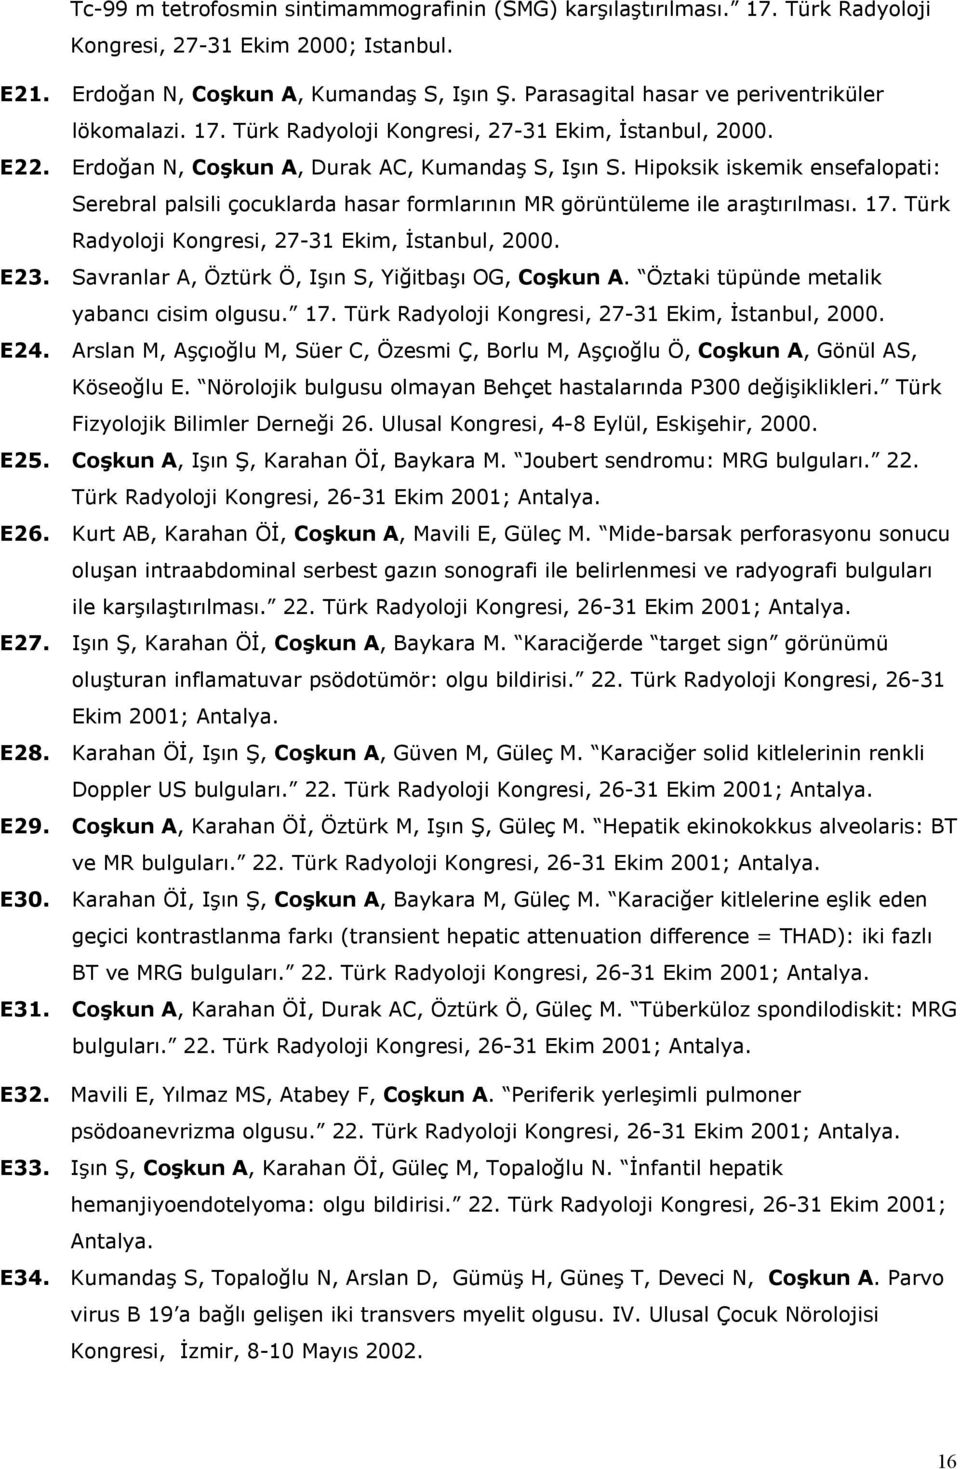 Hipoksik iskemik ensefalopati: Serebral palsili çocuklarda hasar formlarının MR görüntüleme ile araştırılması. 17. Türk Radyoloji Kongresi, 27-31 Ekim, İstanbul, 2000. E23.